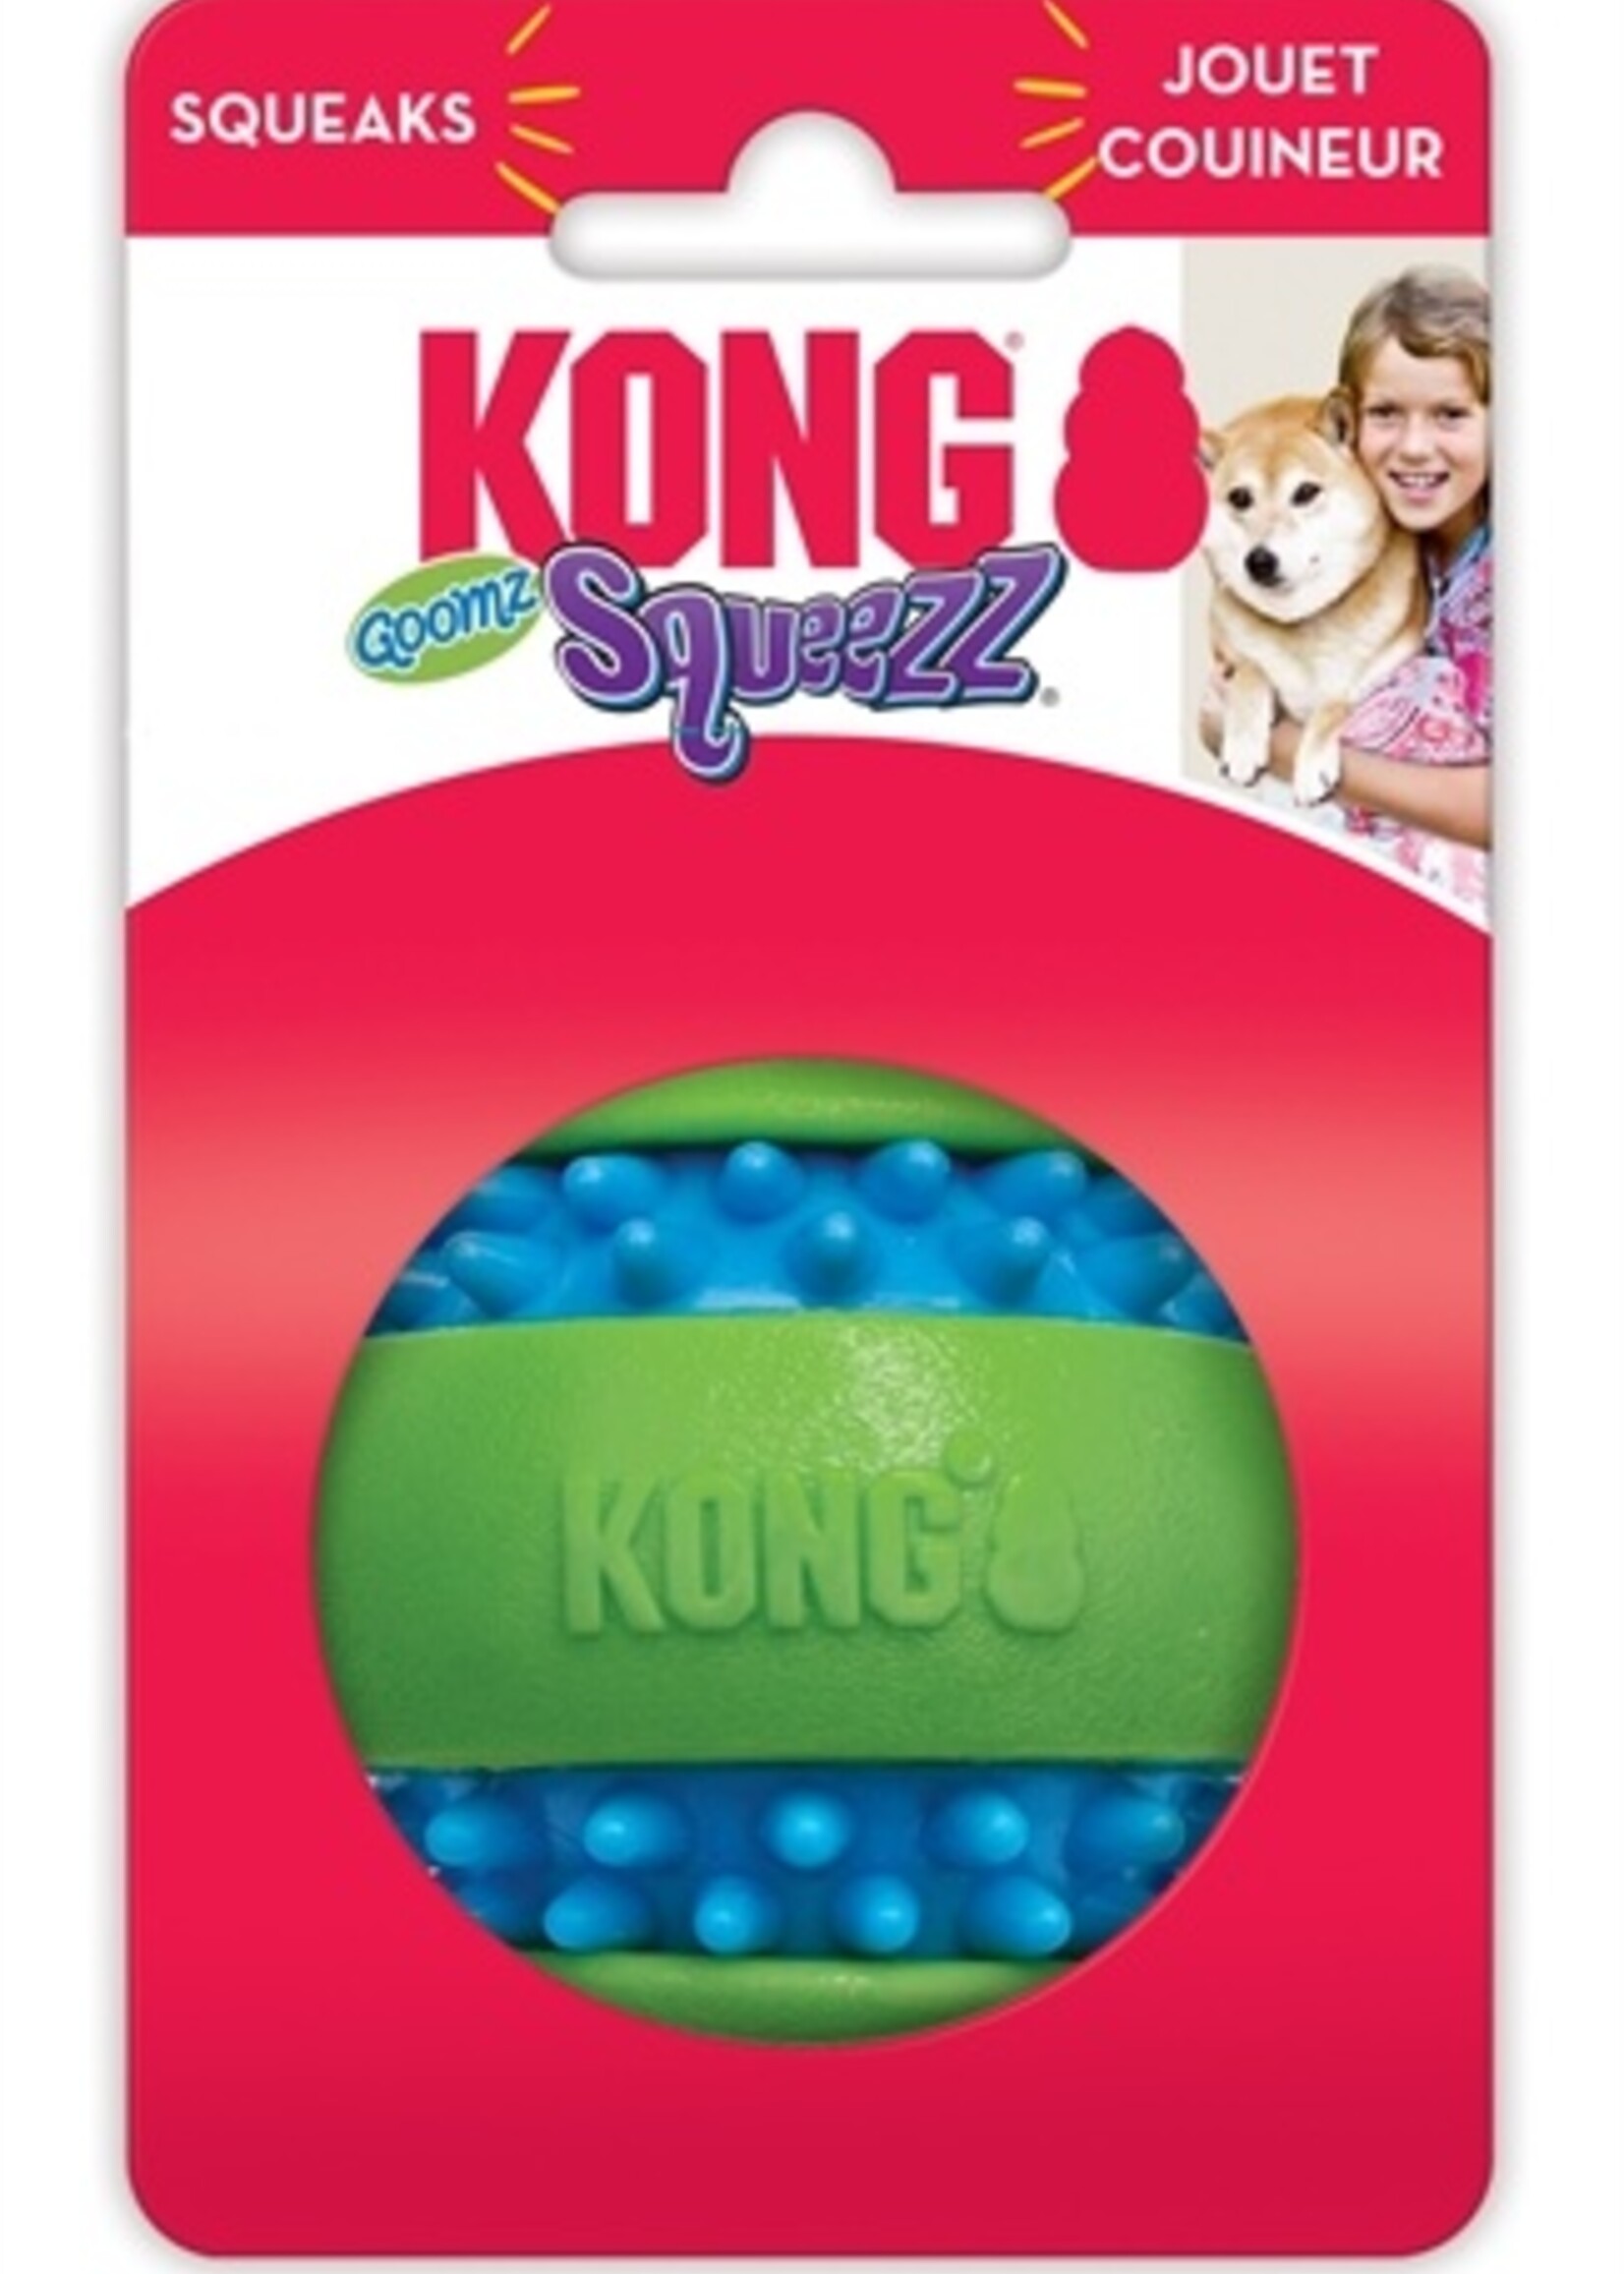 Kong Kong squeezz goomz bal